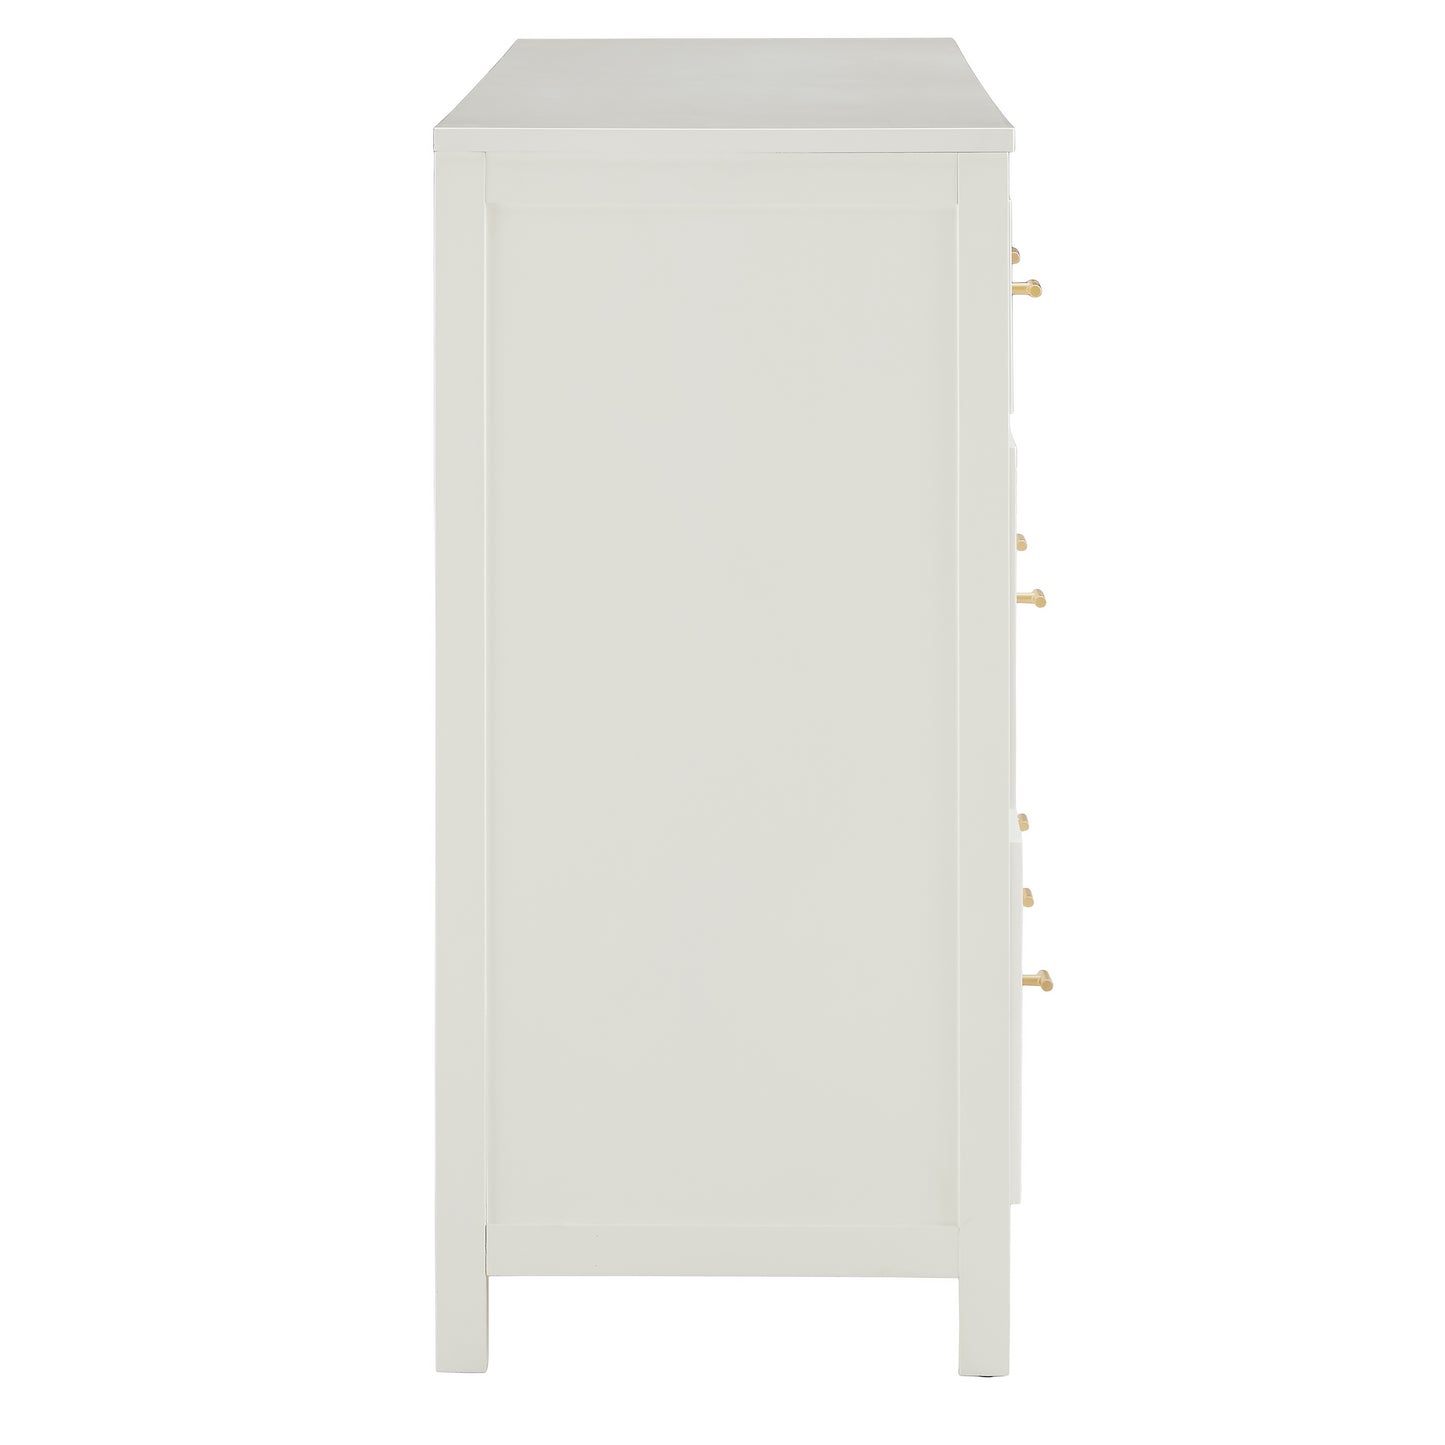 8-Drawer Dresser - White